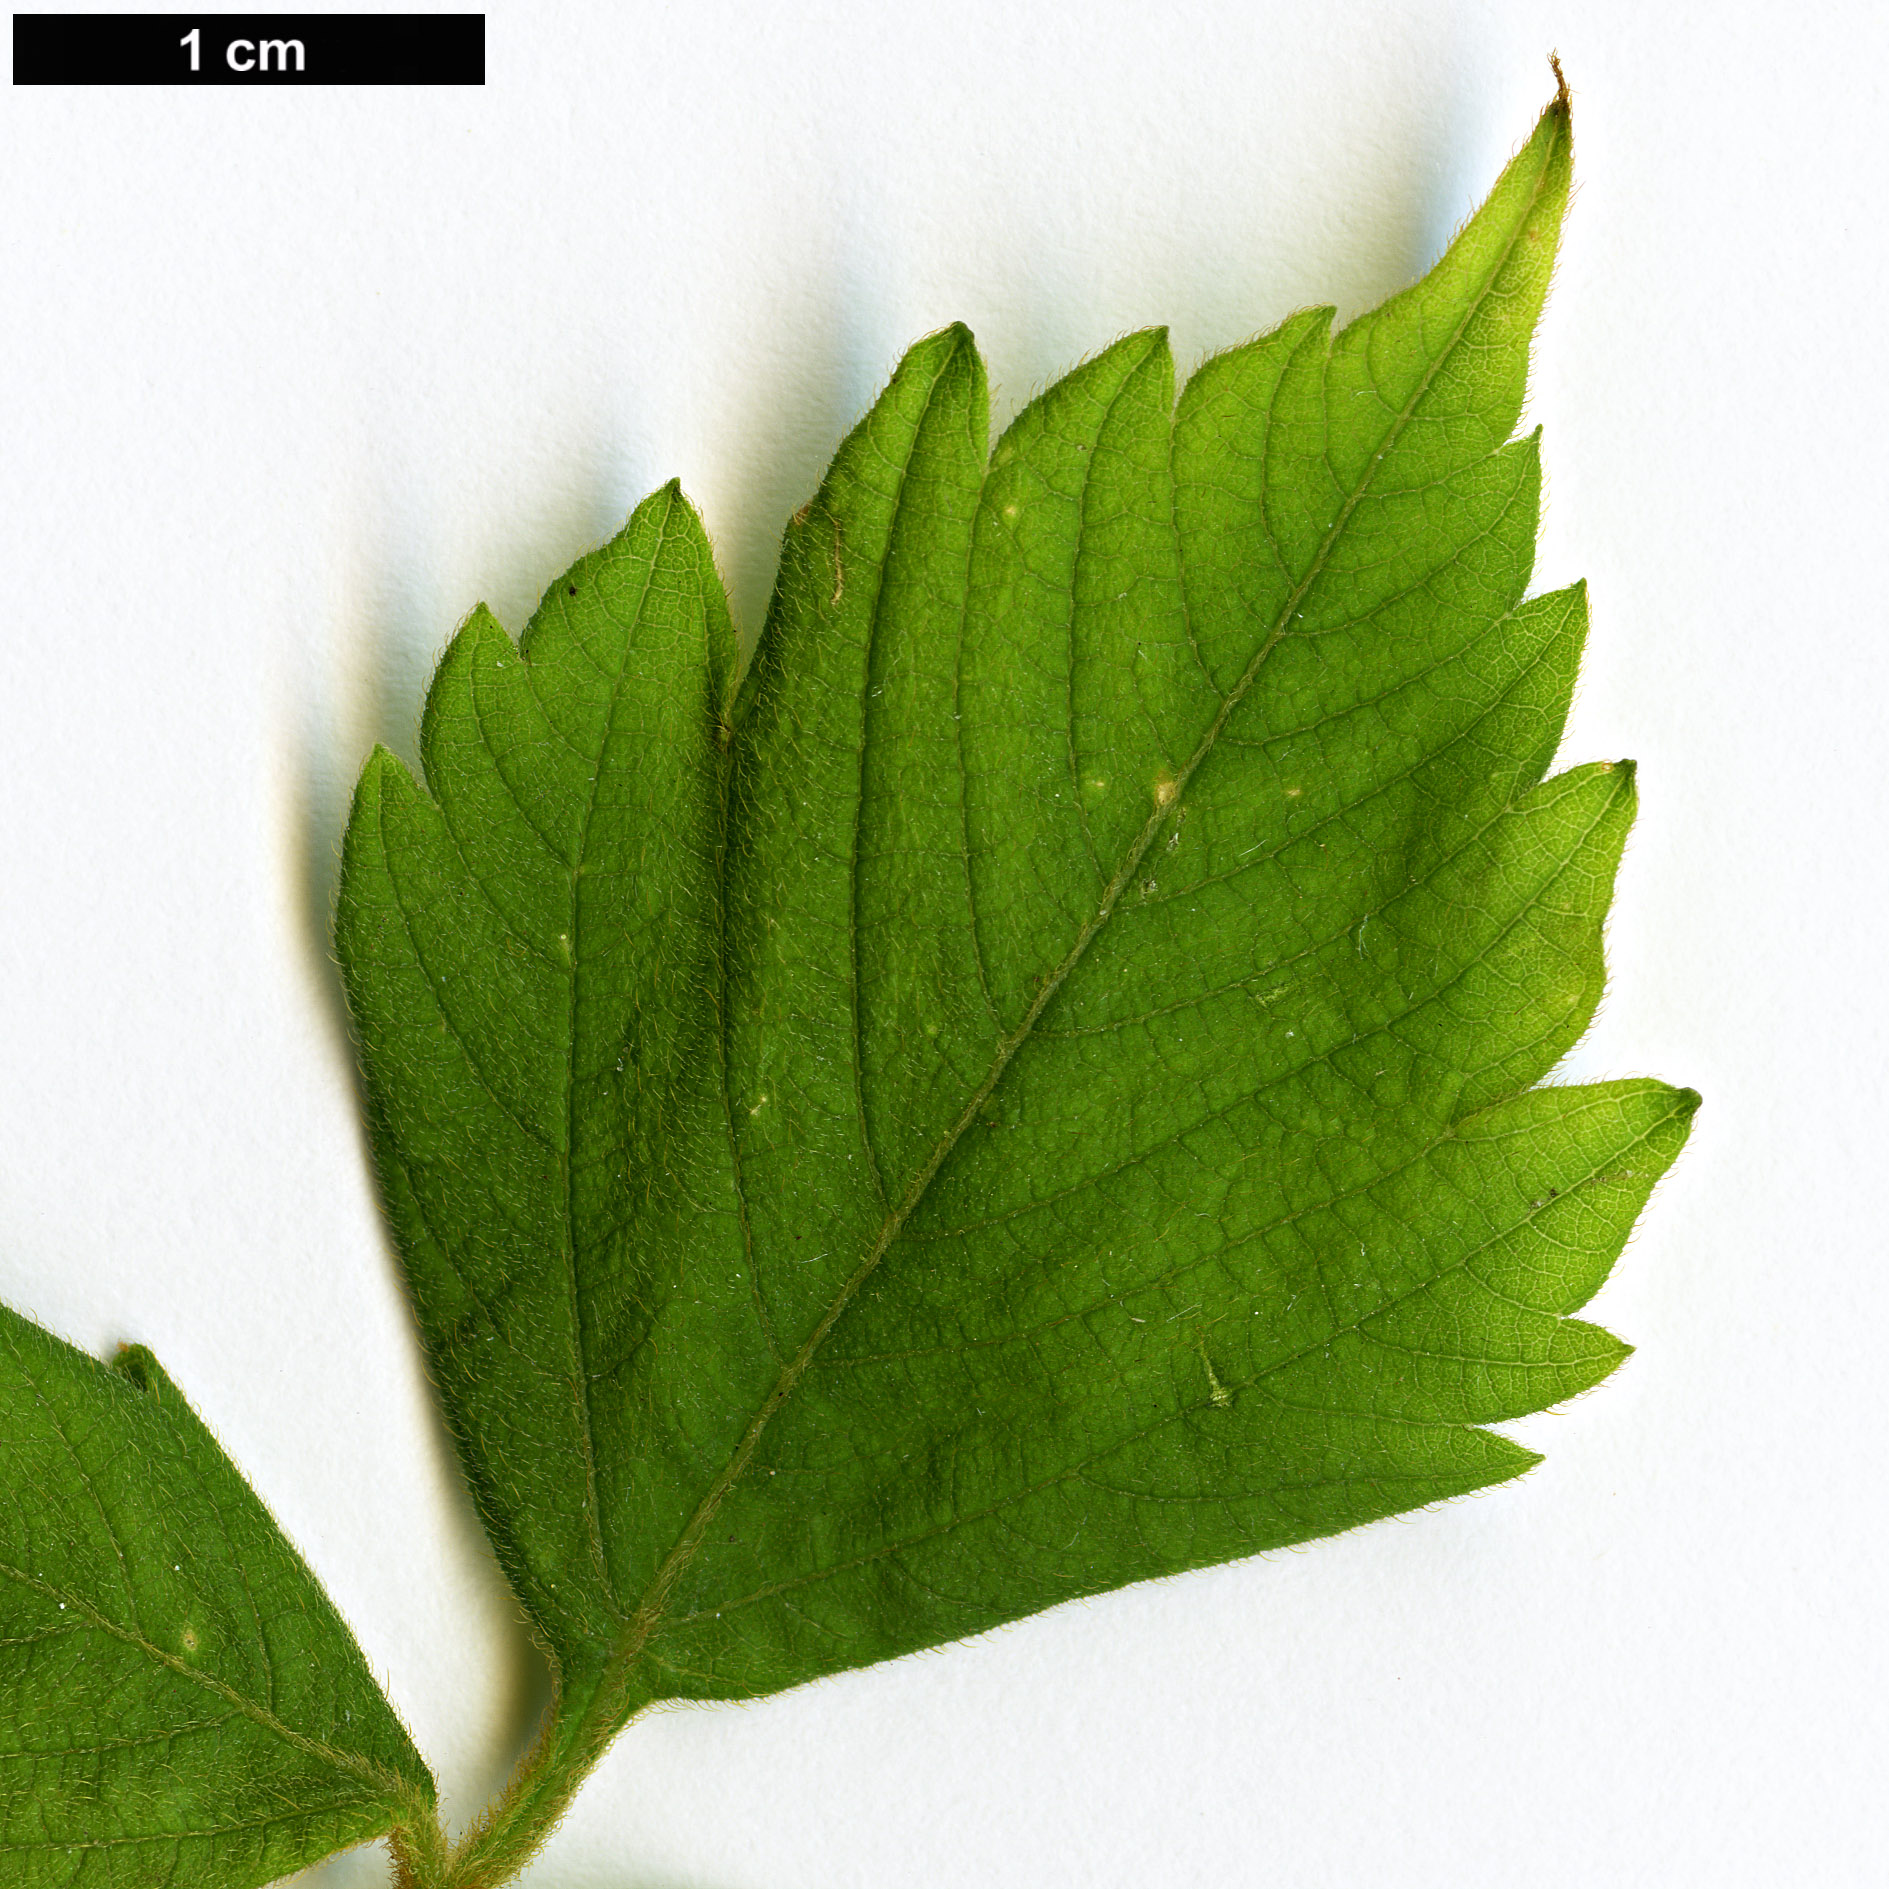 High resolution image: Family: Sapindaceae - Genus: Cardiospermum - Taxon: grandiflorum